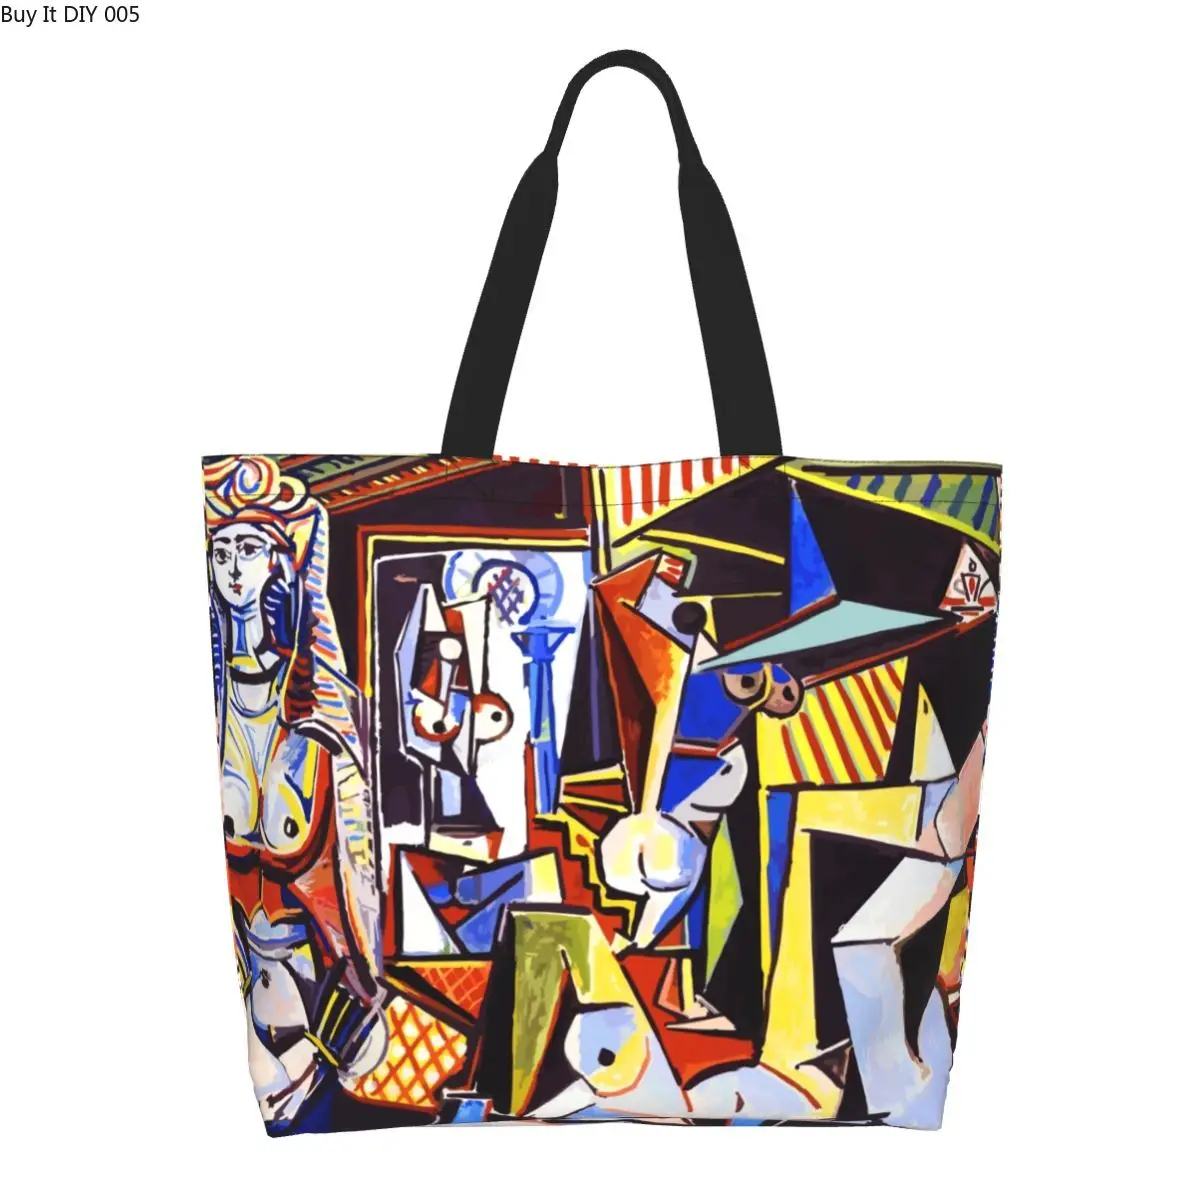 

Сумка-тоут с забавным Пабло Пикассо для женщин из Алжира, многоразовая холщовая сумка-шоппер для продуктов, сумка через плечо